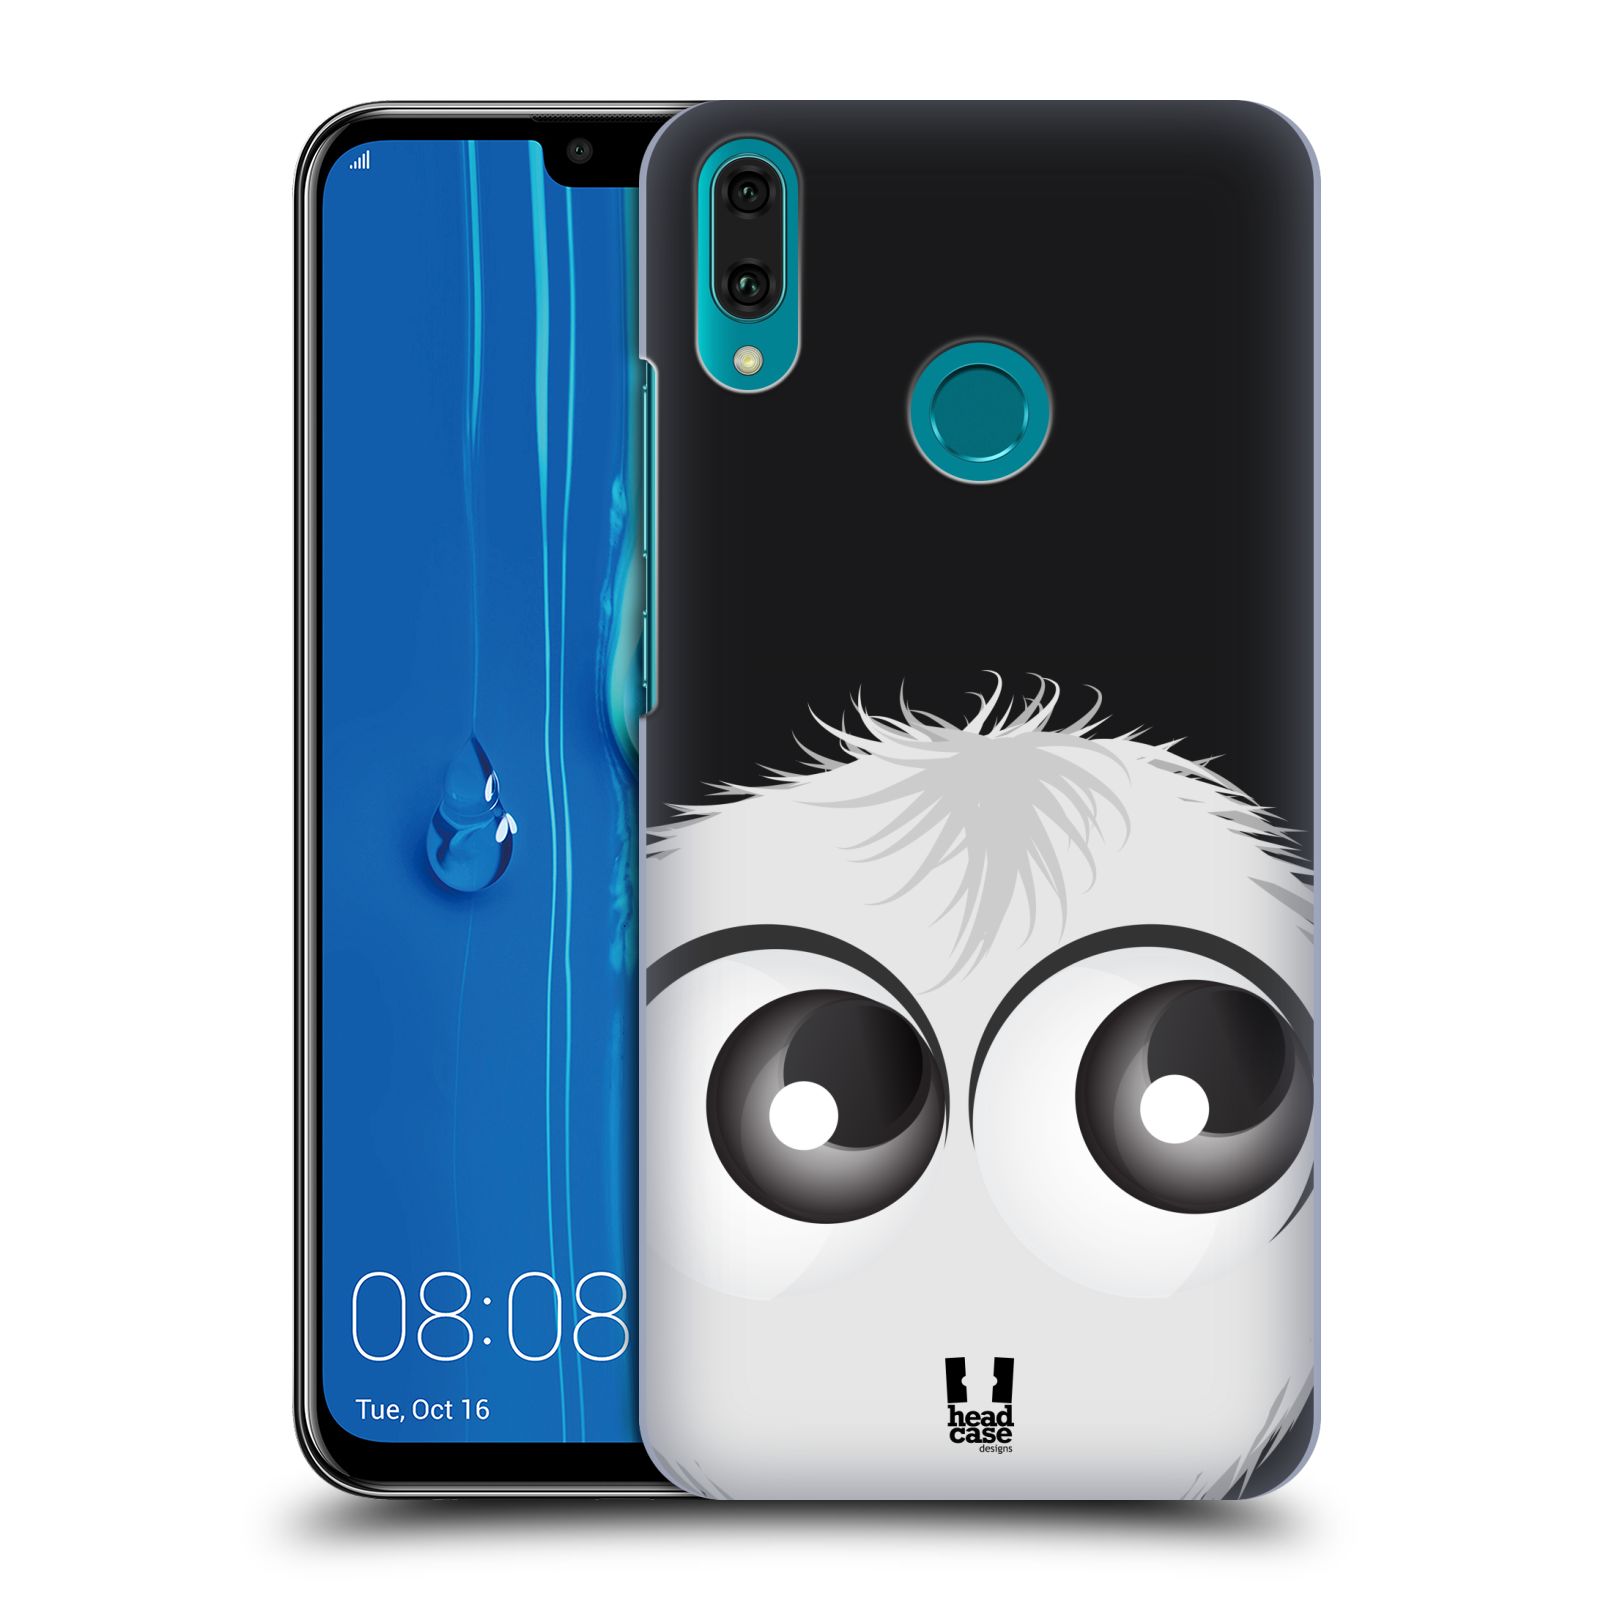 Pouzdro na mobil Huawei Y9 2019 - HEAD CASE - vzor Barevný chlupatý smajlík BÍLÁ černé pozadí